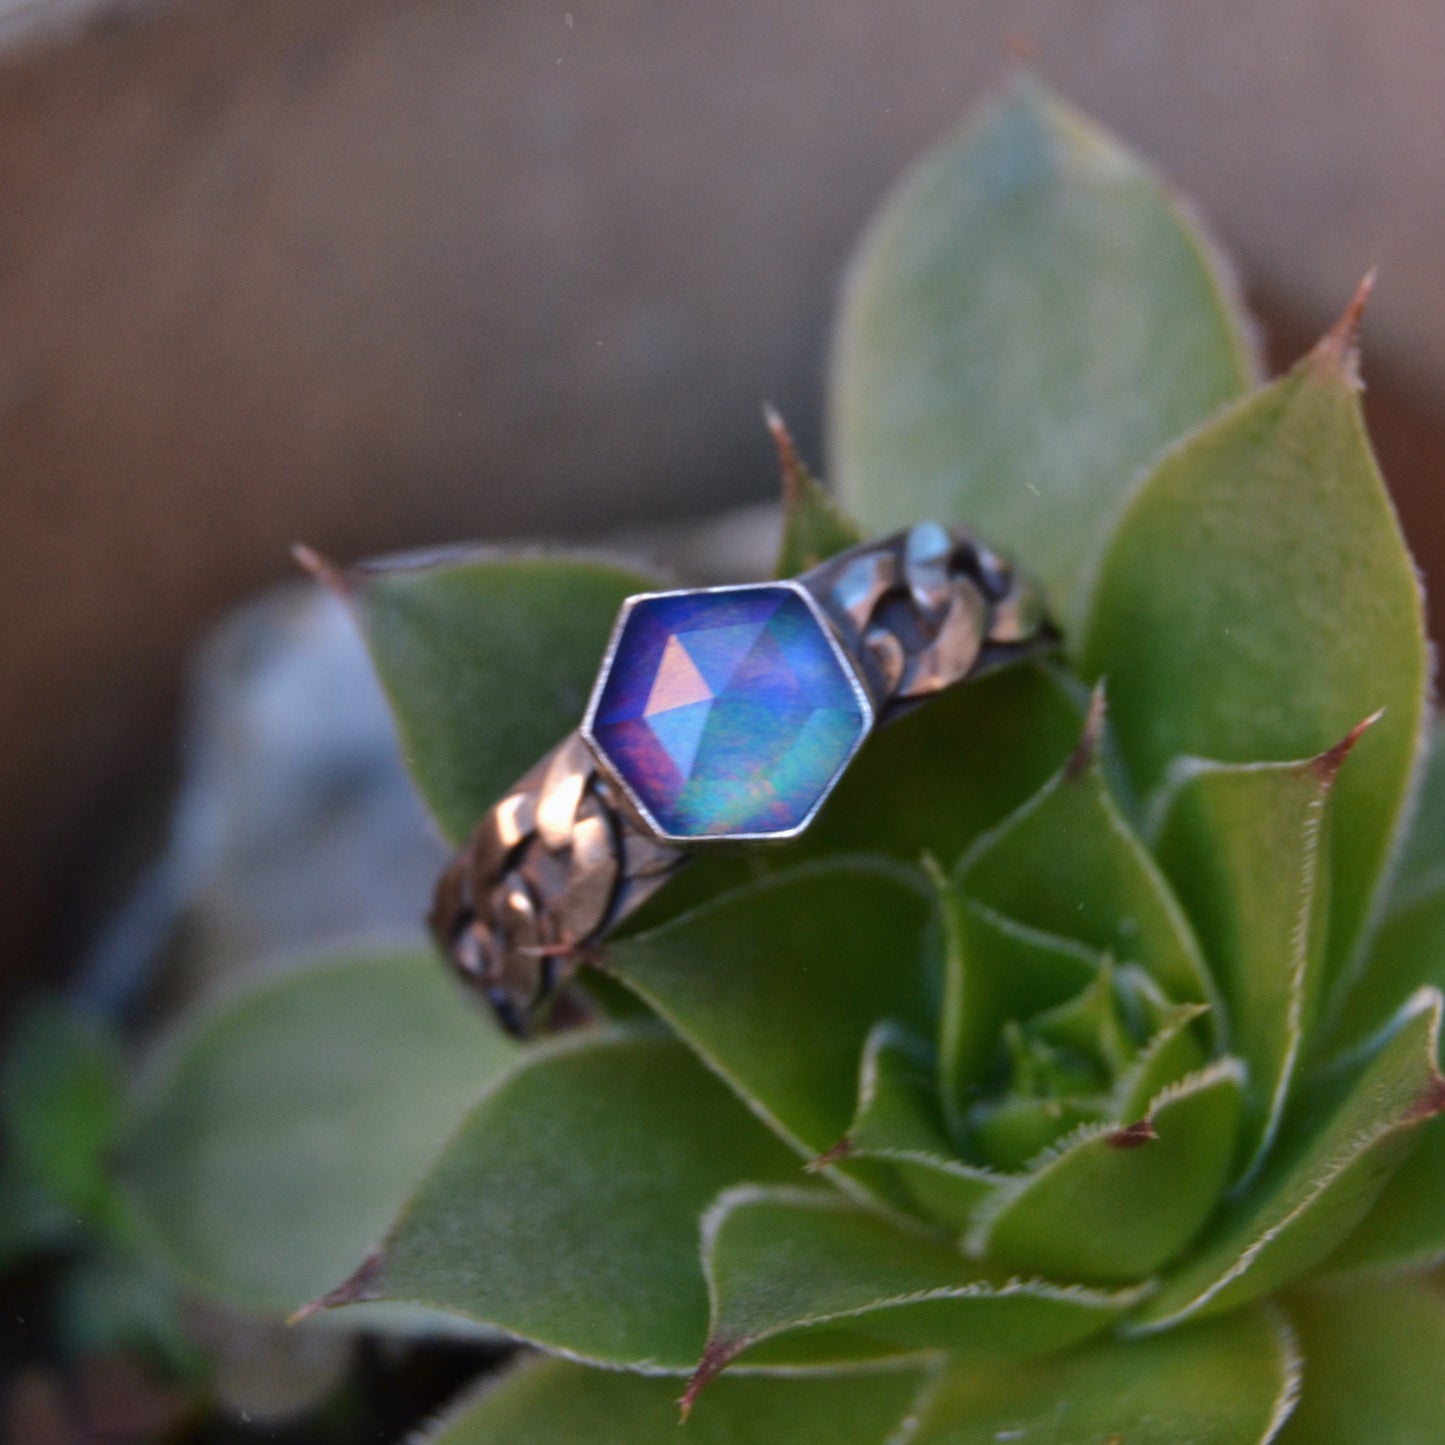 Aura Opal Chain Ring